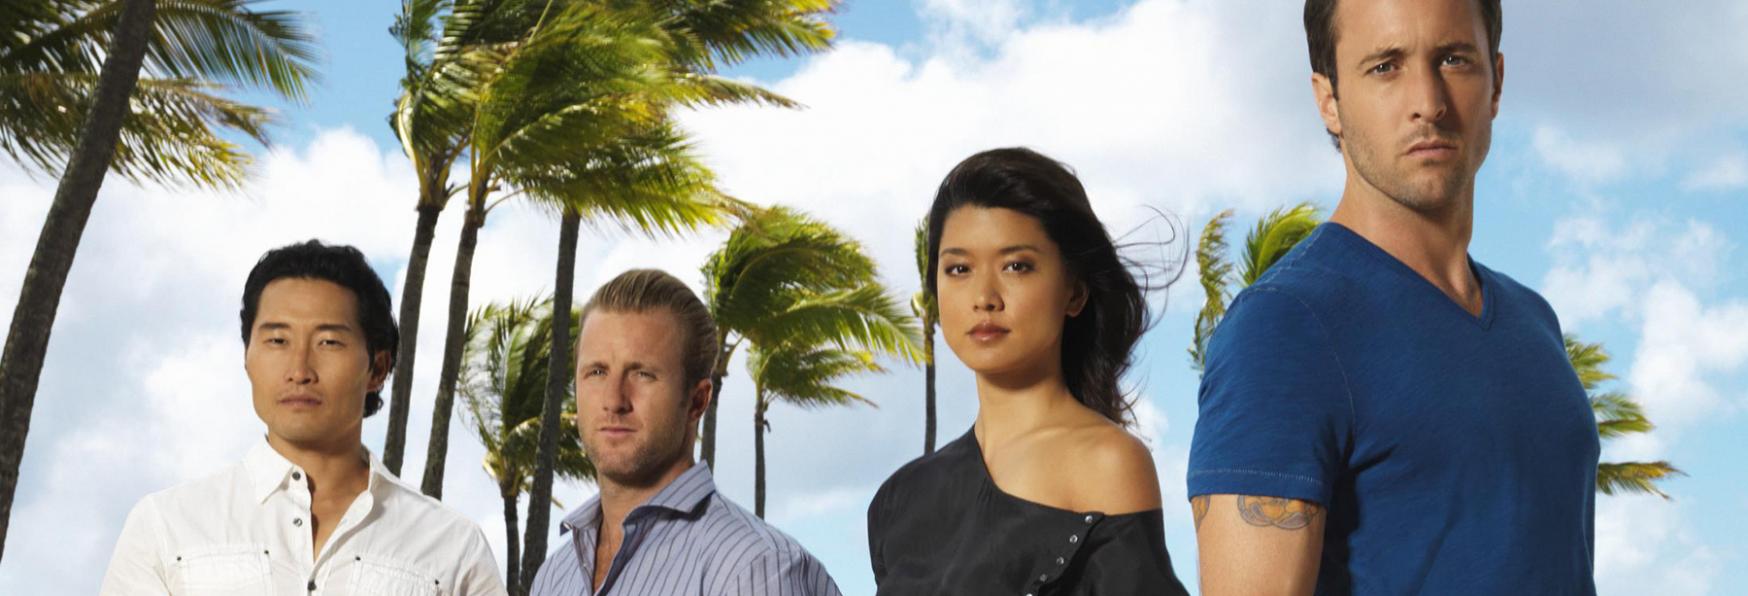 Hawaii Five-0: CBS Cancella la Serie TV dopo ben 10 Stagioni